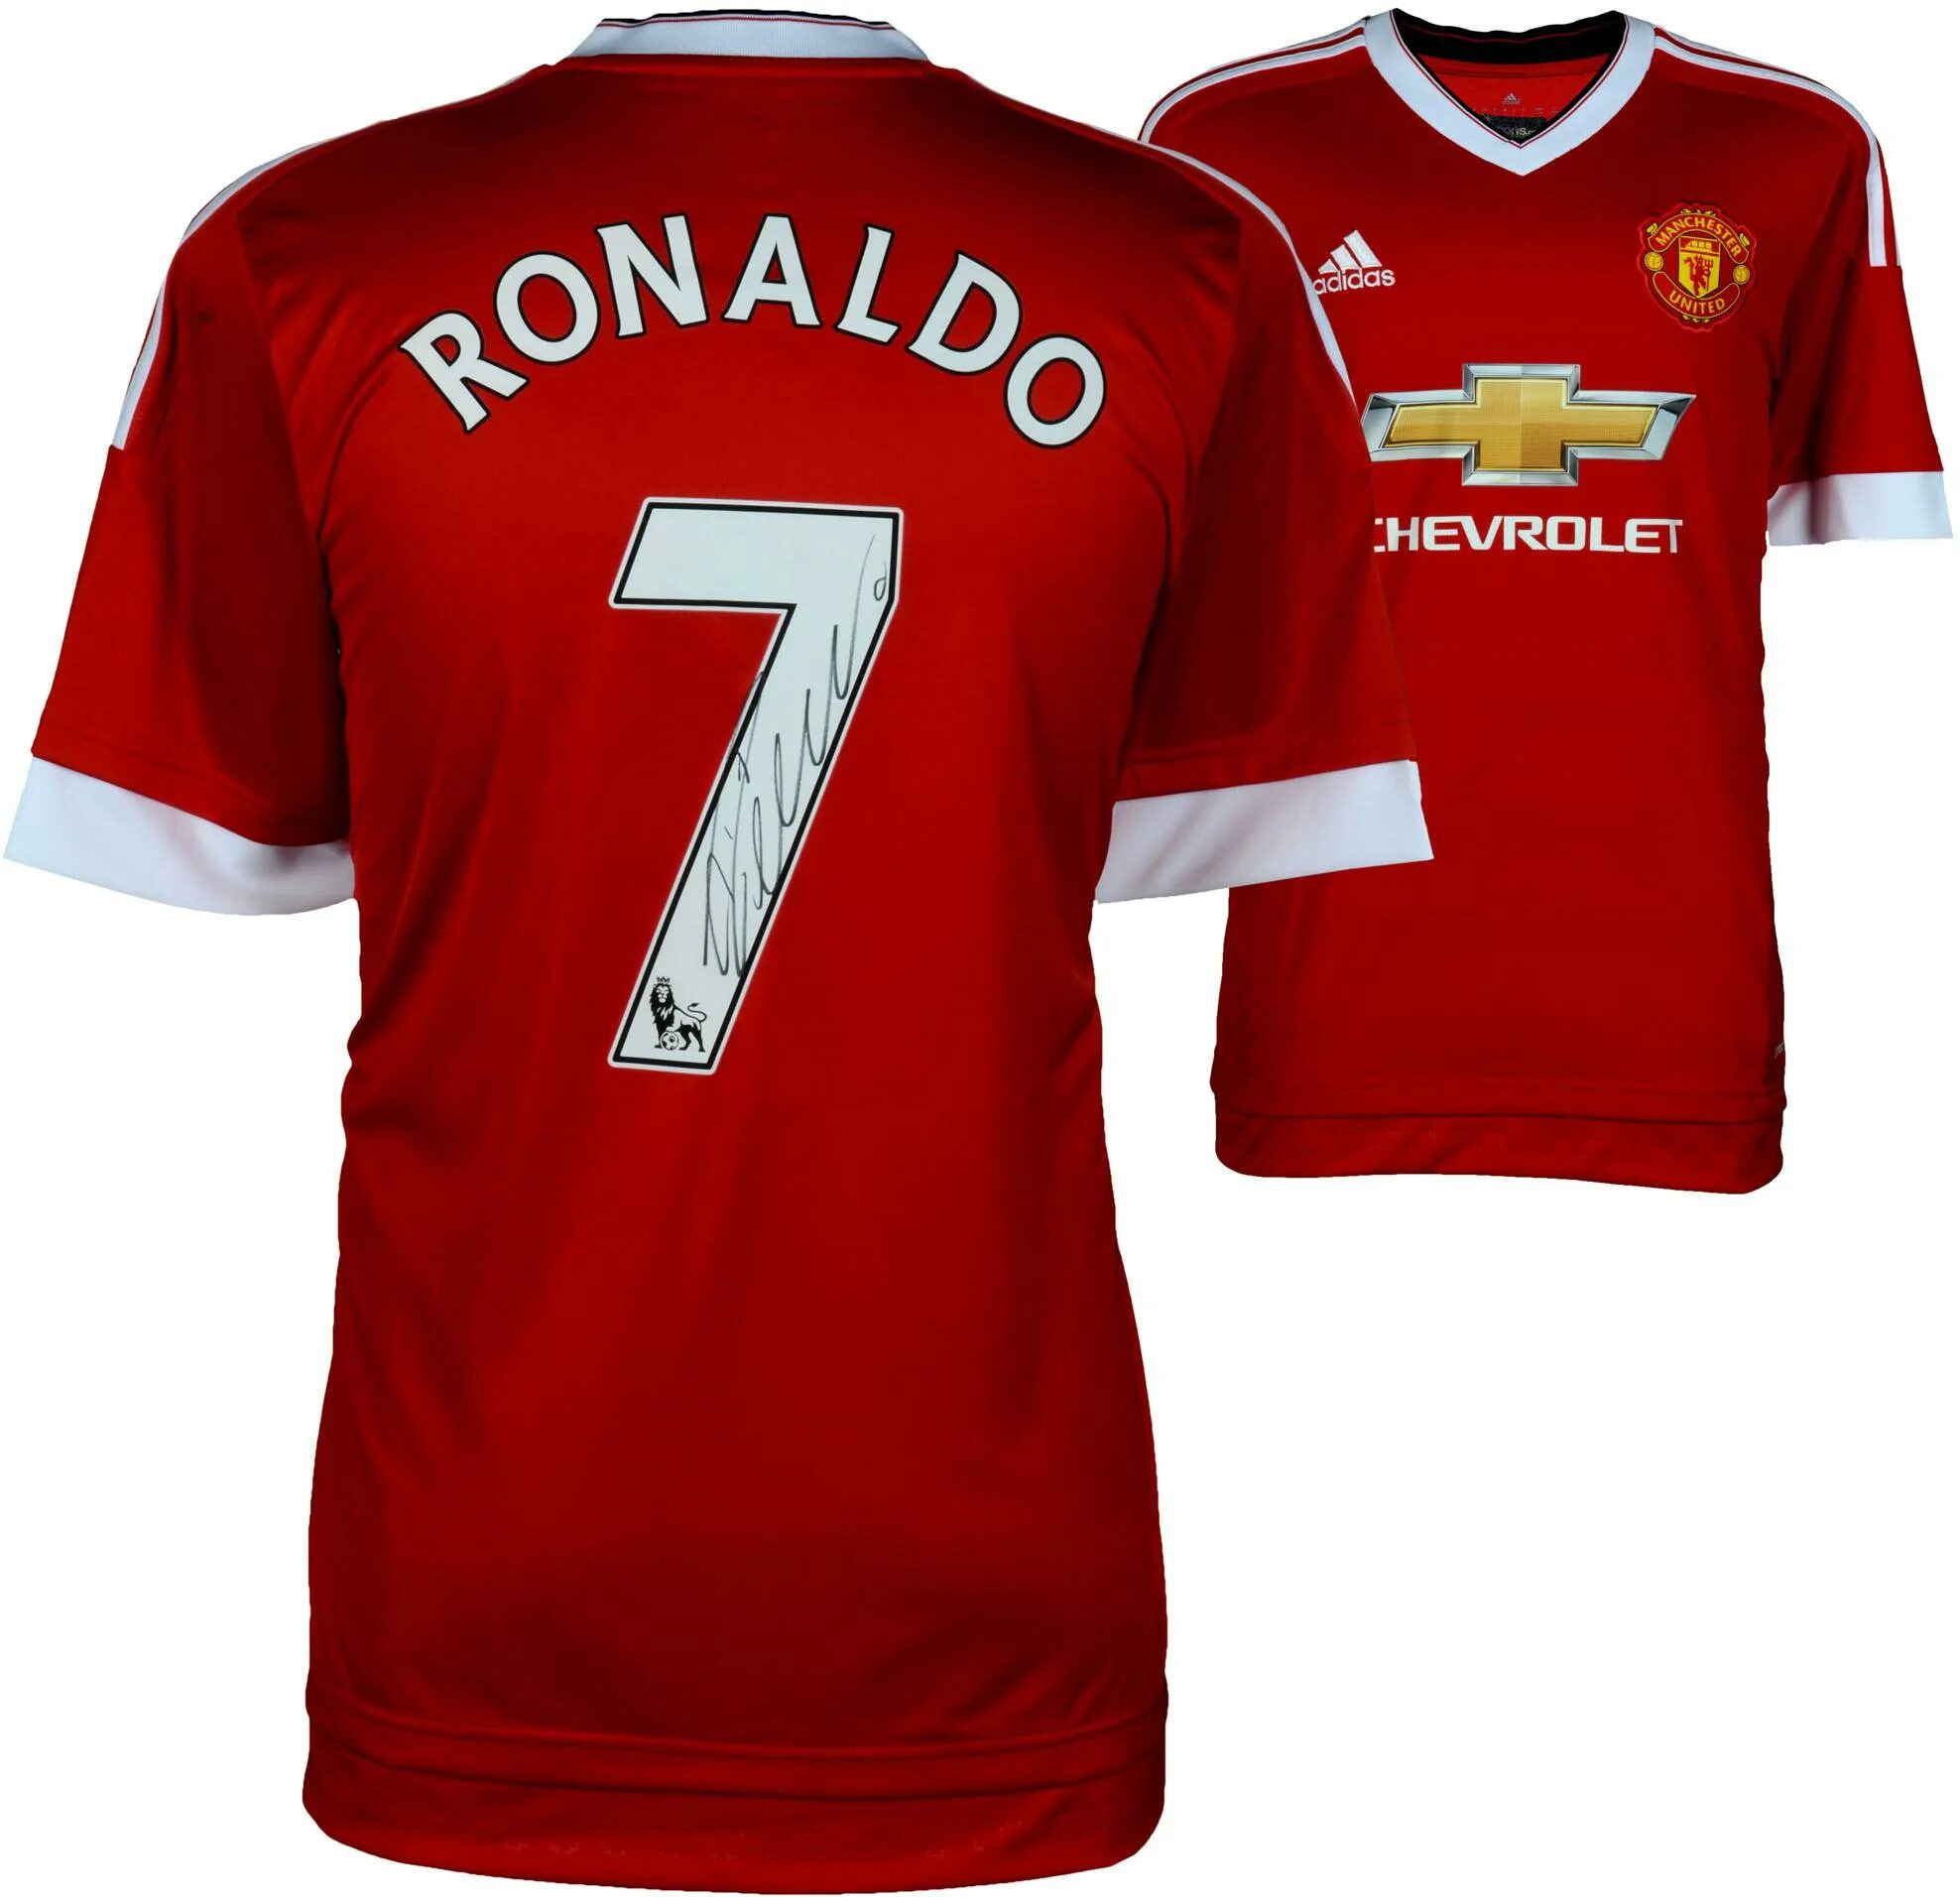 Криштиану Роналду в форме Манчестер Юнайтед. Форма Манчестер Юнайтед 2008 Роналду. Футболка Роналду Манчестер Юнайтед. Роналду в майке Манчестер Юнайтед.